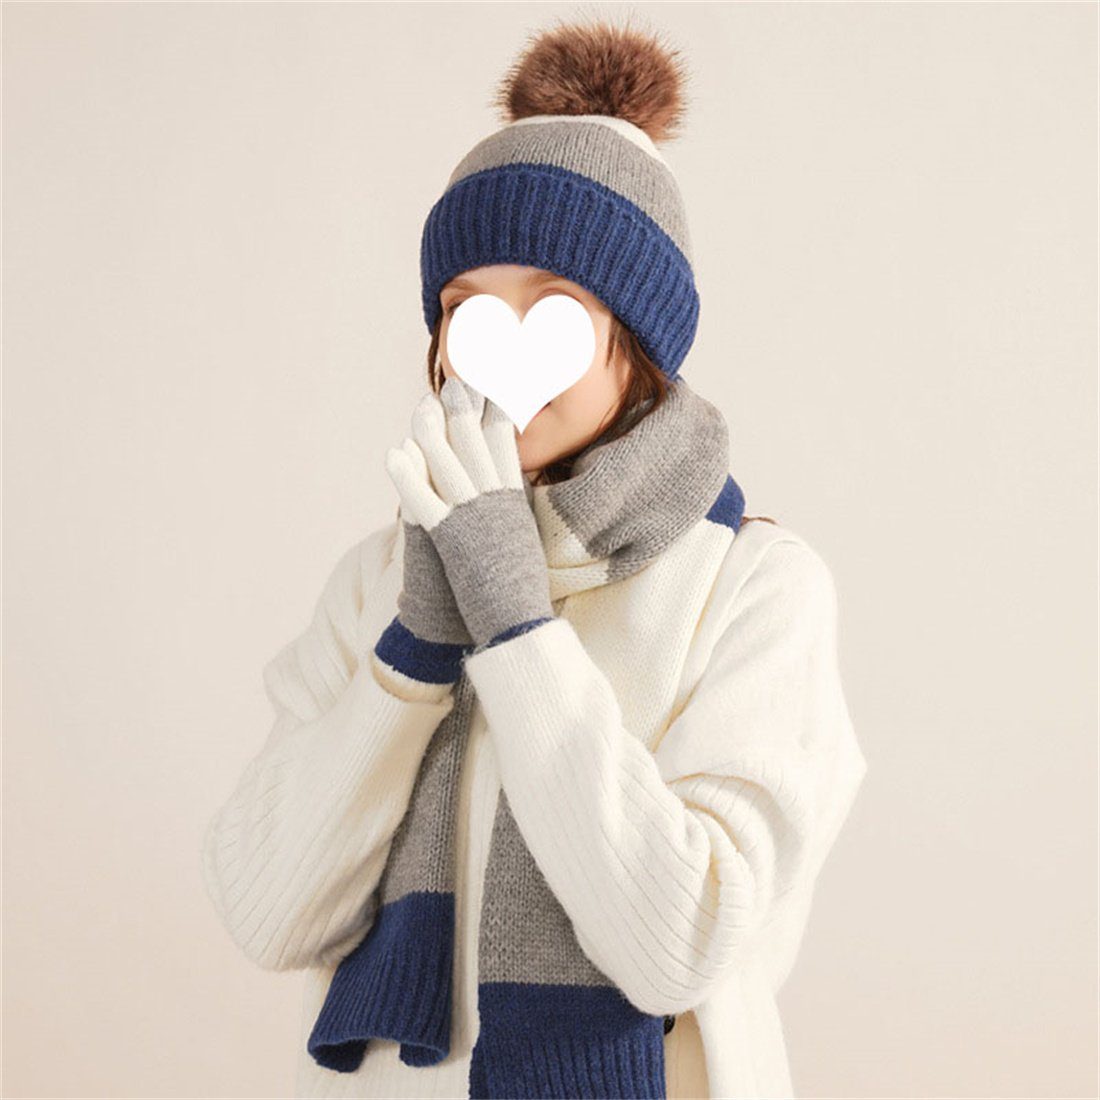 DÖRÖY Strickmütze Winter Bunte Modische Wollmütze, Warme Mütze Schal Handschuhe 3er Set Weiß + Blau